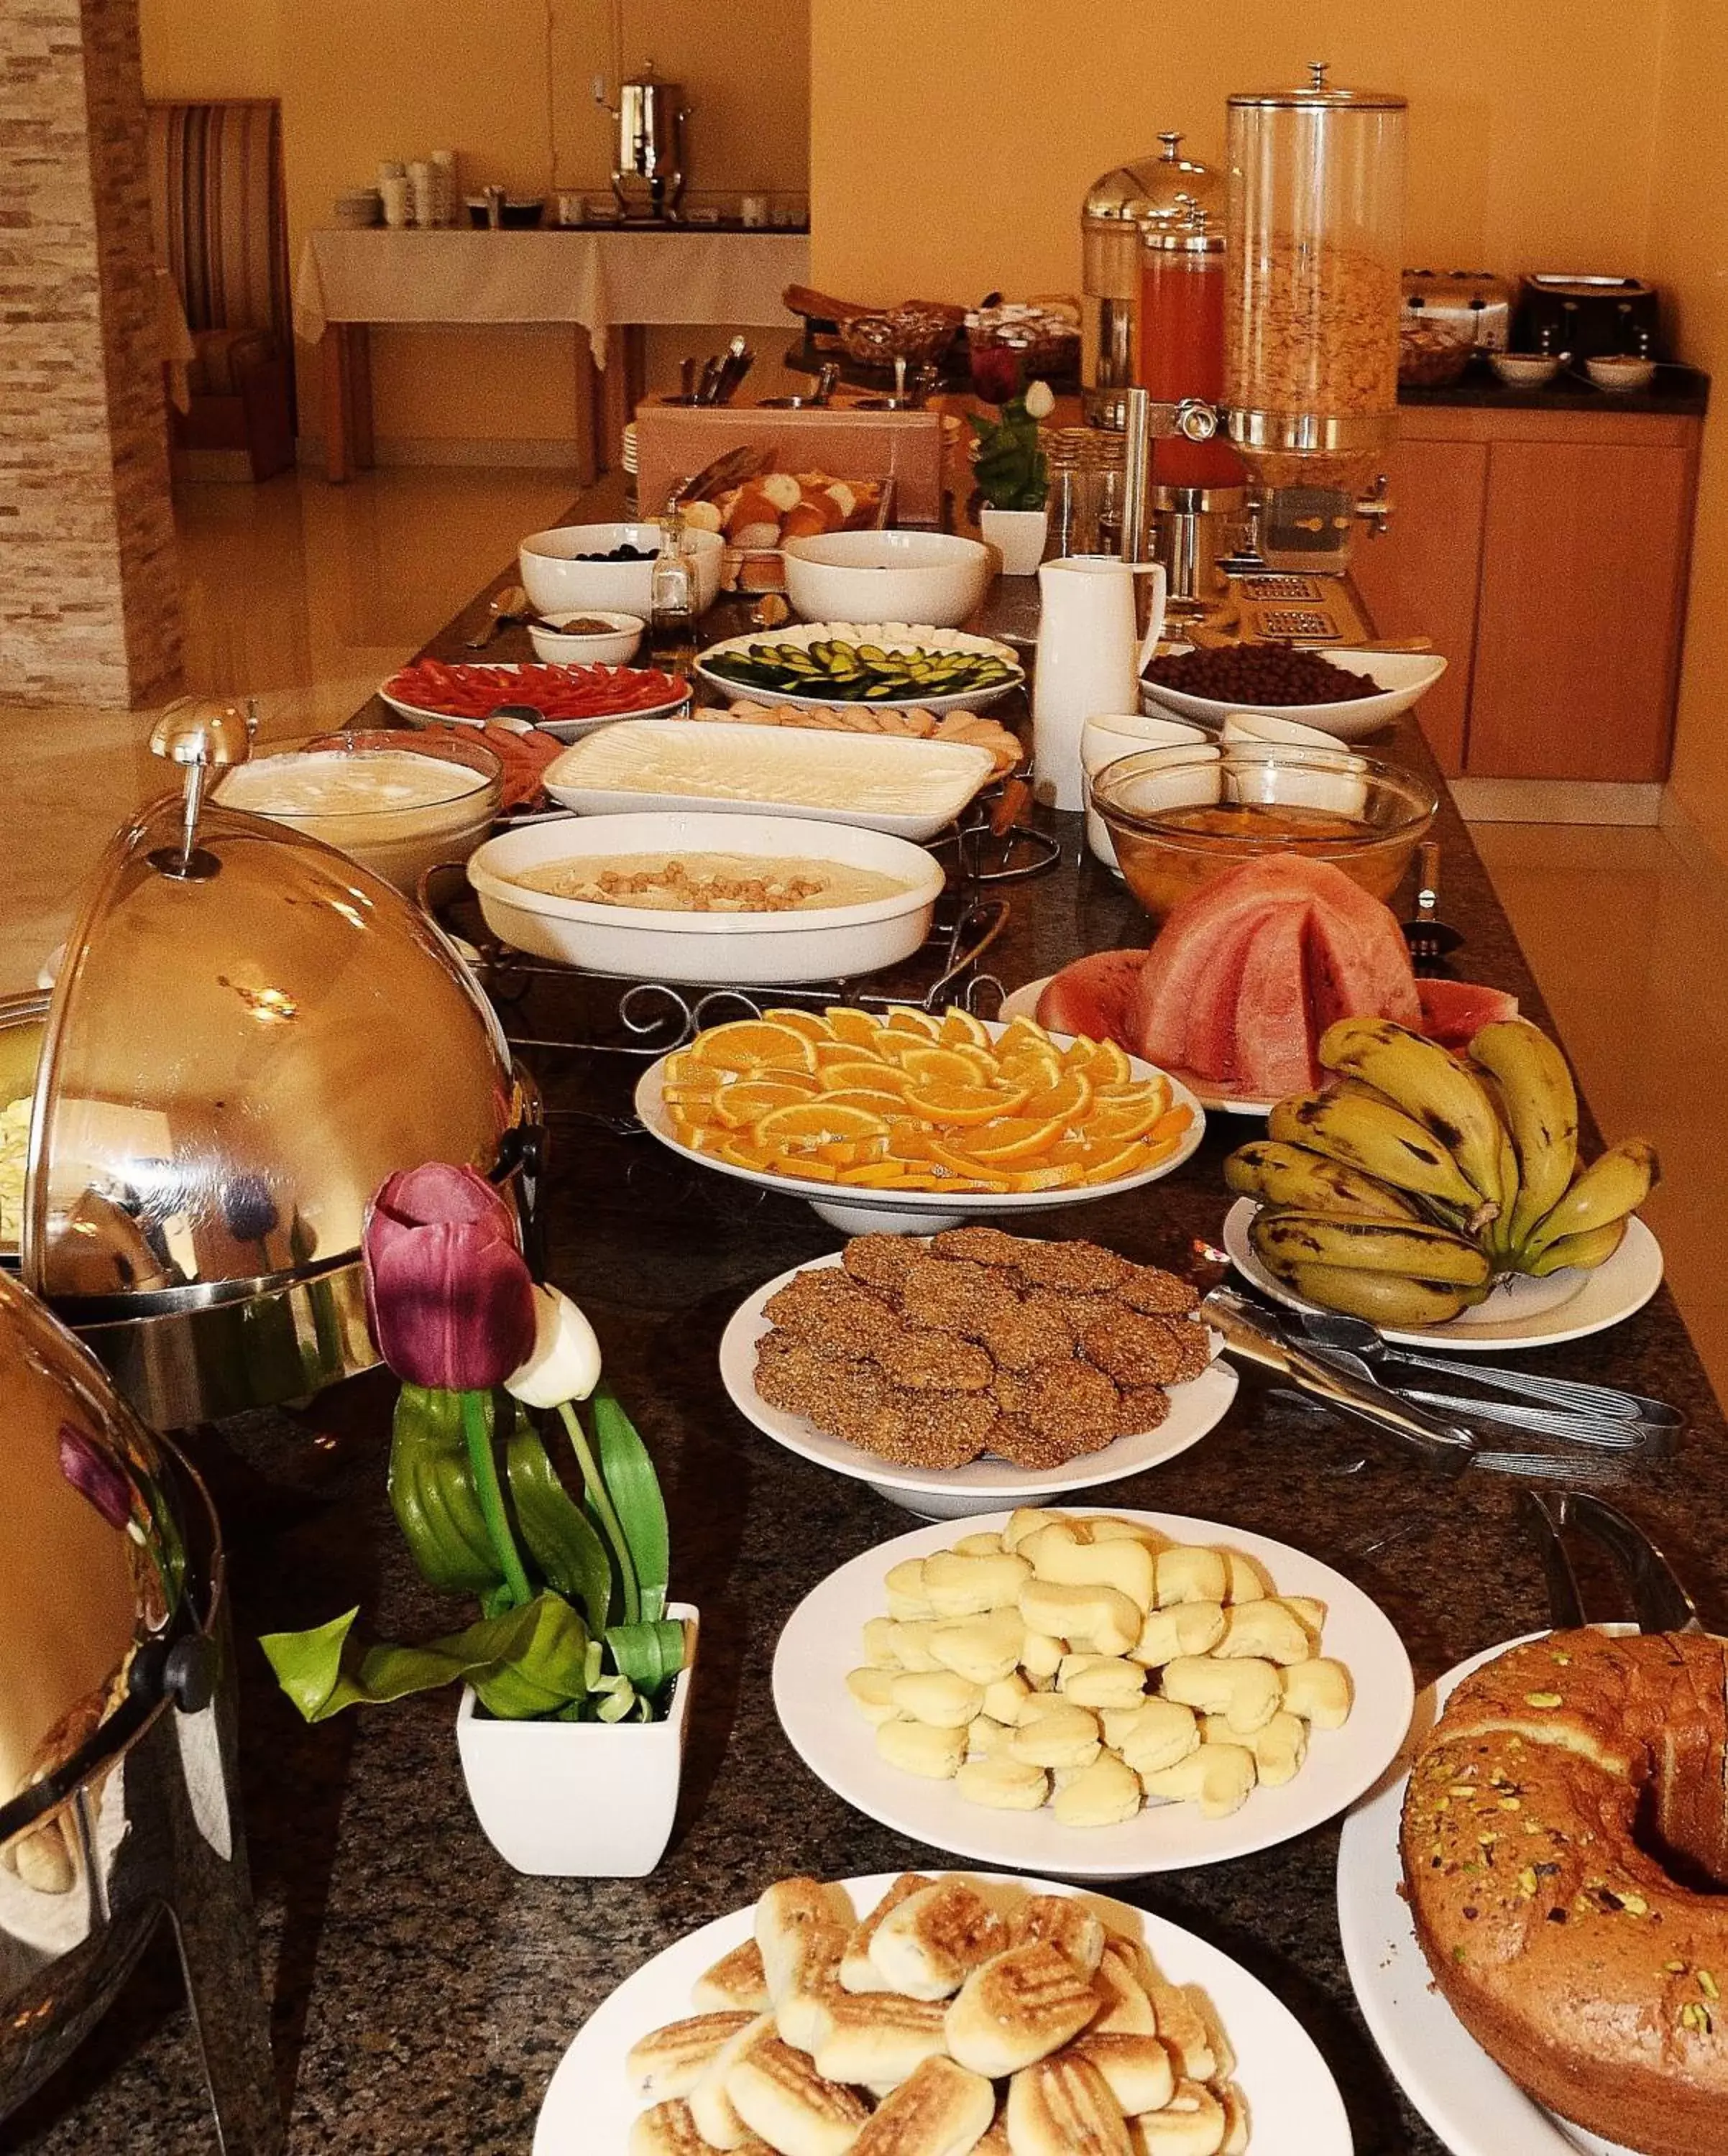 Buffet breakfast, Food in Mosaic City Hotel